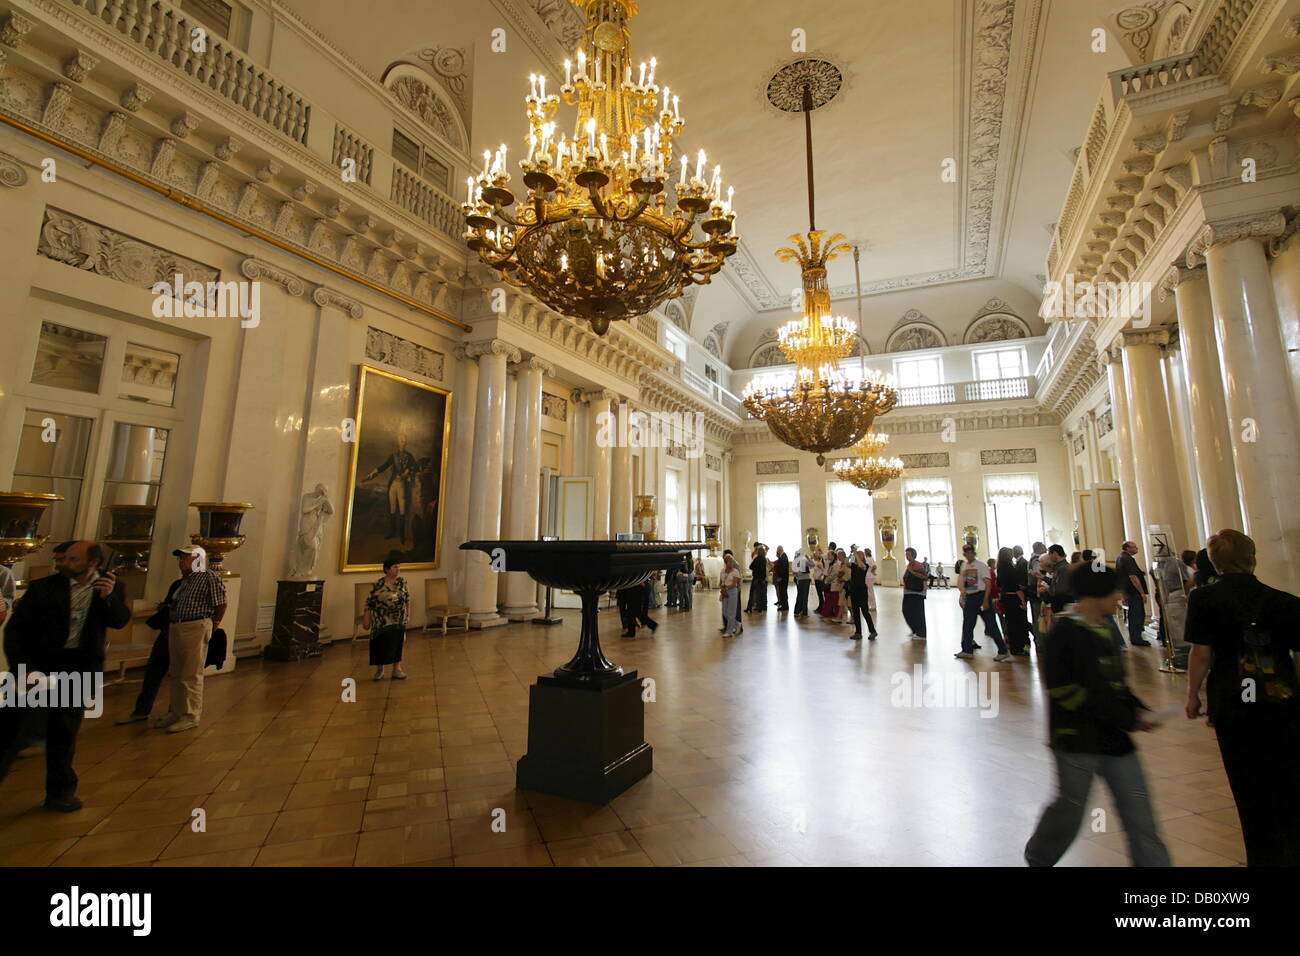 Besucher schauen Sie sich die nationalen Eremitage in St. Petersburg, Russland, 6. Juli 2007. Die Eremitage ist eines der größten und bedeutendsten Kunstmuseen der Welt. Mehr als 60,000 Werke sind in 1000 Hallen ausgestellt. Die Kunstsammlung wurde von Catherine II von Rußland im Jahre 1764 gegründet. Foto: Peter Kneffel Stockfoto